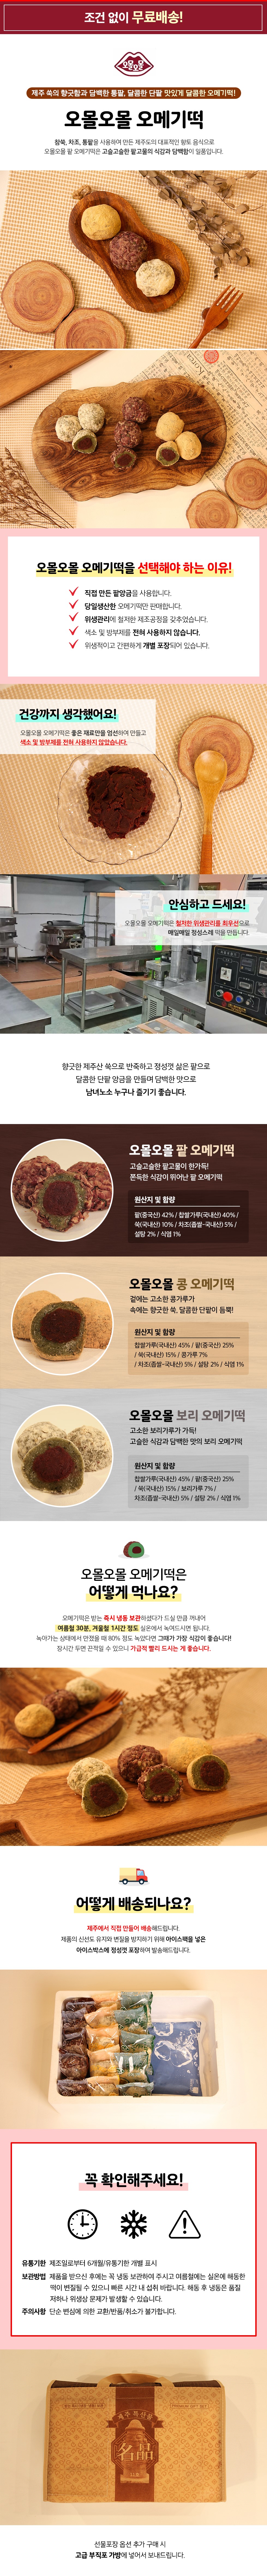 팥&콩까루&보리 오메기떡 30개/60개 상세